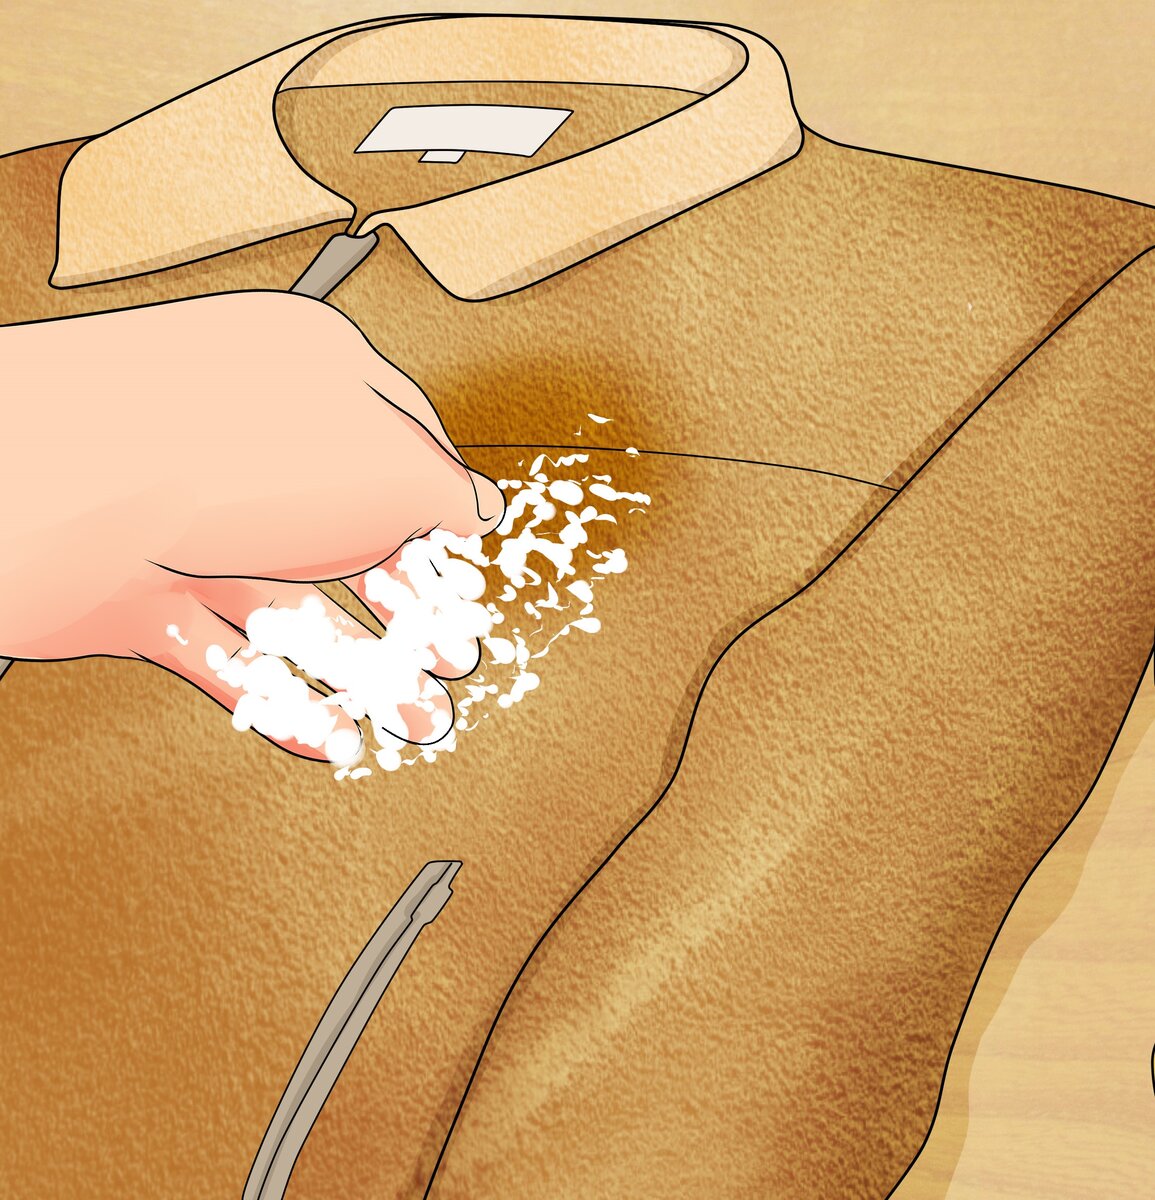 10 хитростей, как избавиться от жирных пятен на замшевой одежде, обуви и сумке